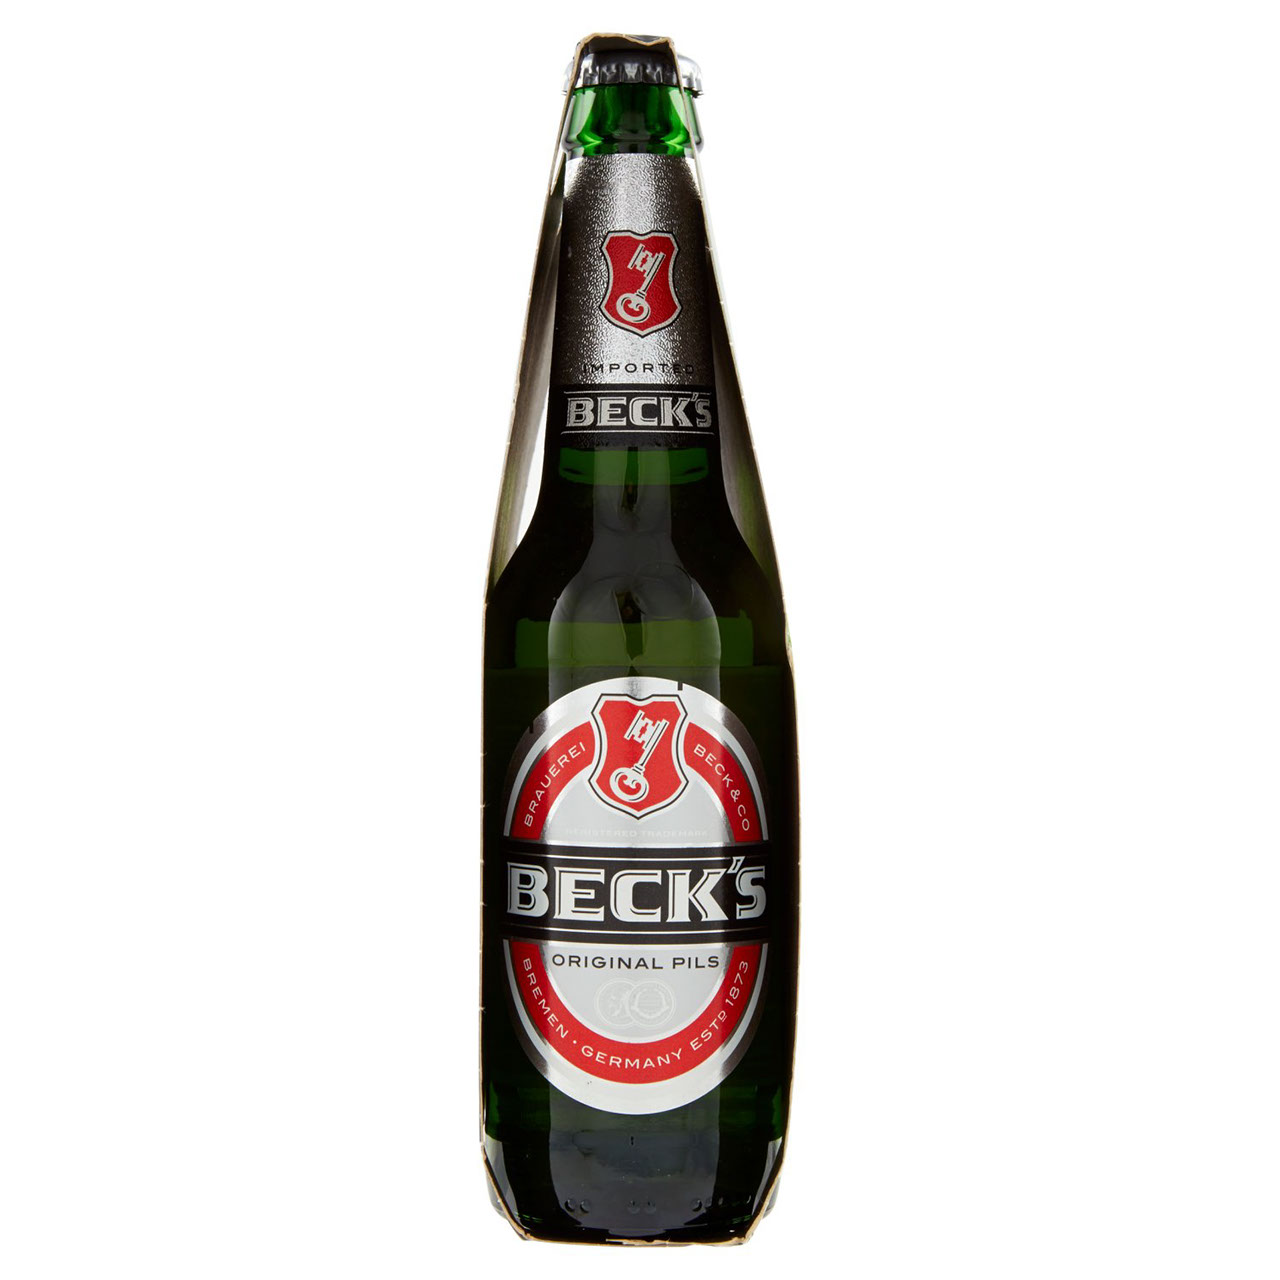 Beck's Birra Pilsner in Bottiglia vendita online